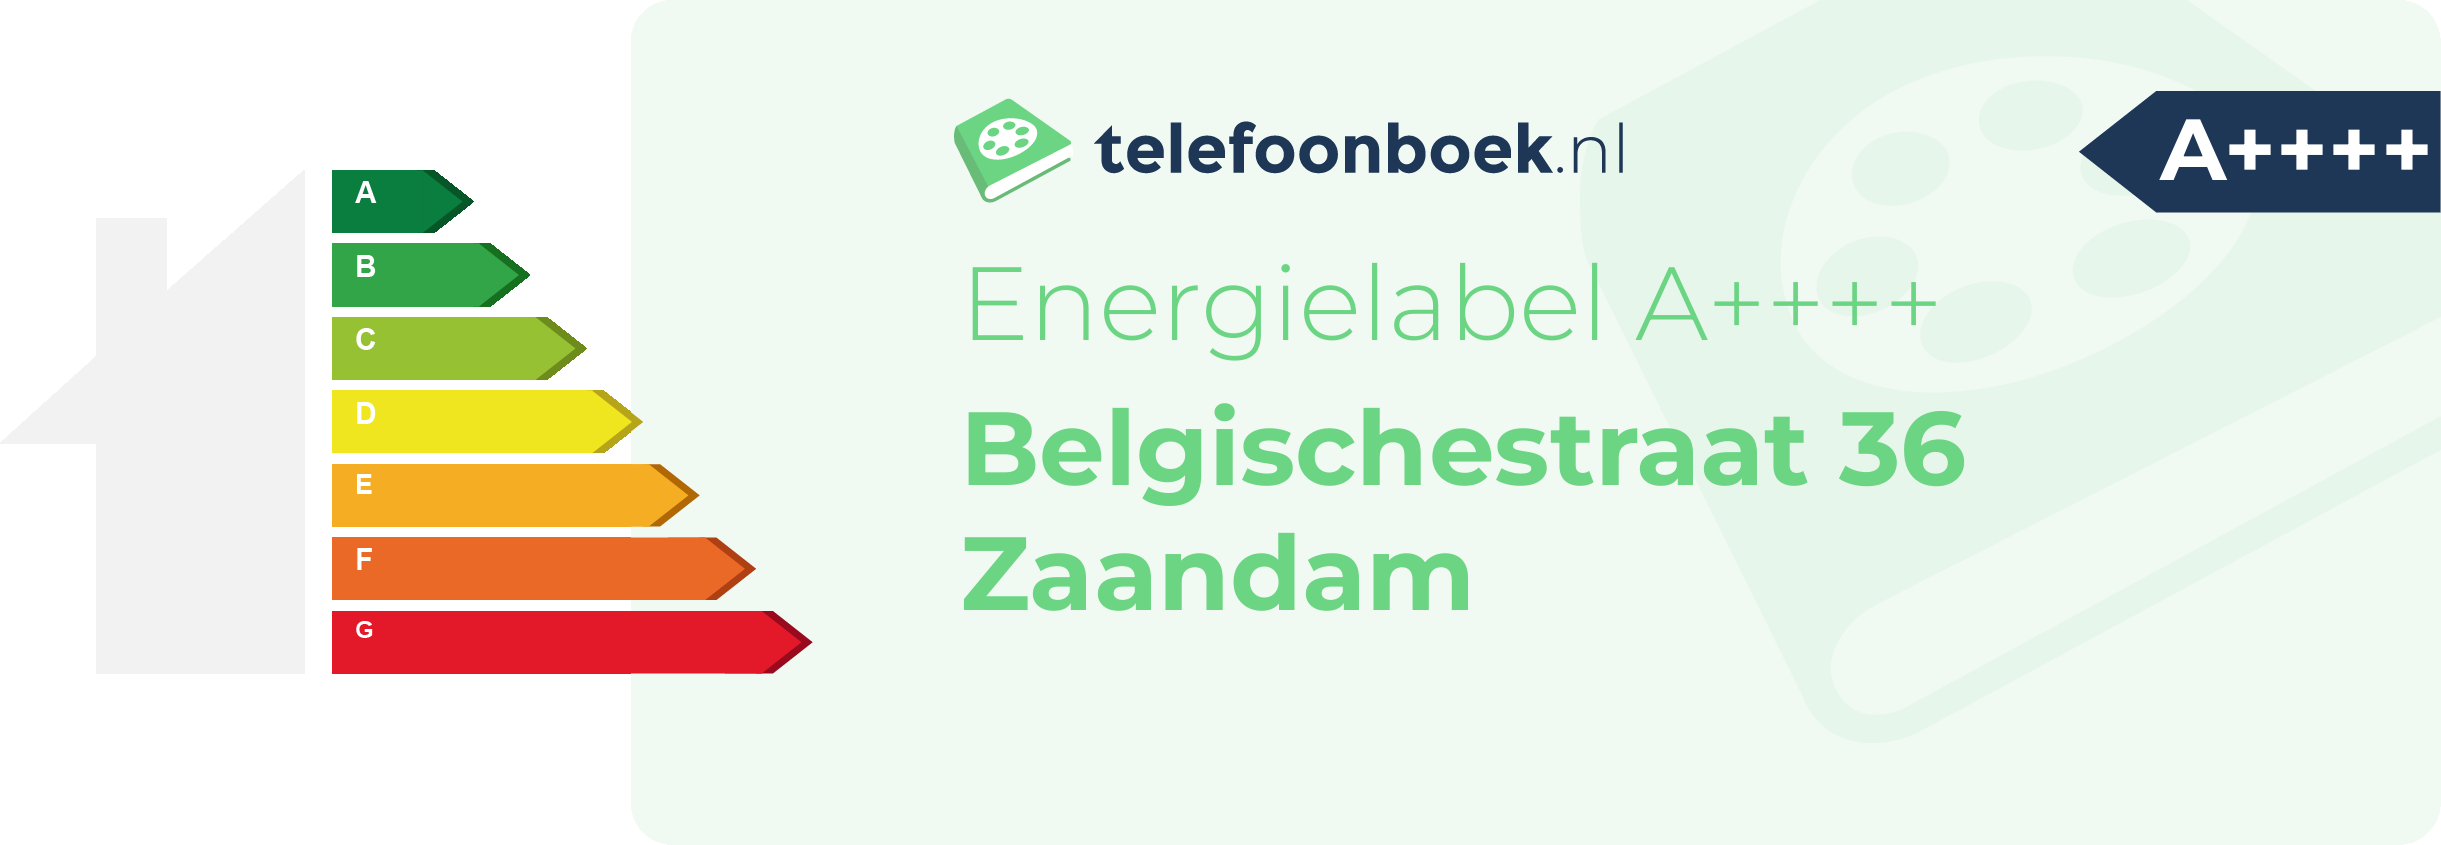 Energielabel Belgischestraat 36 Zaandam